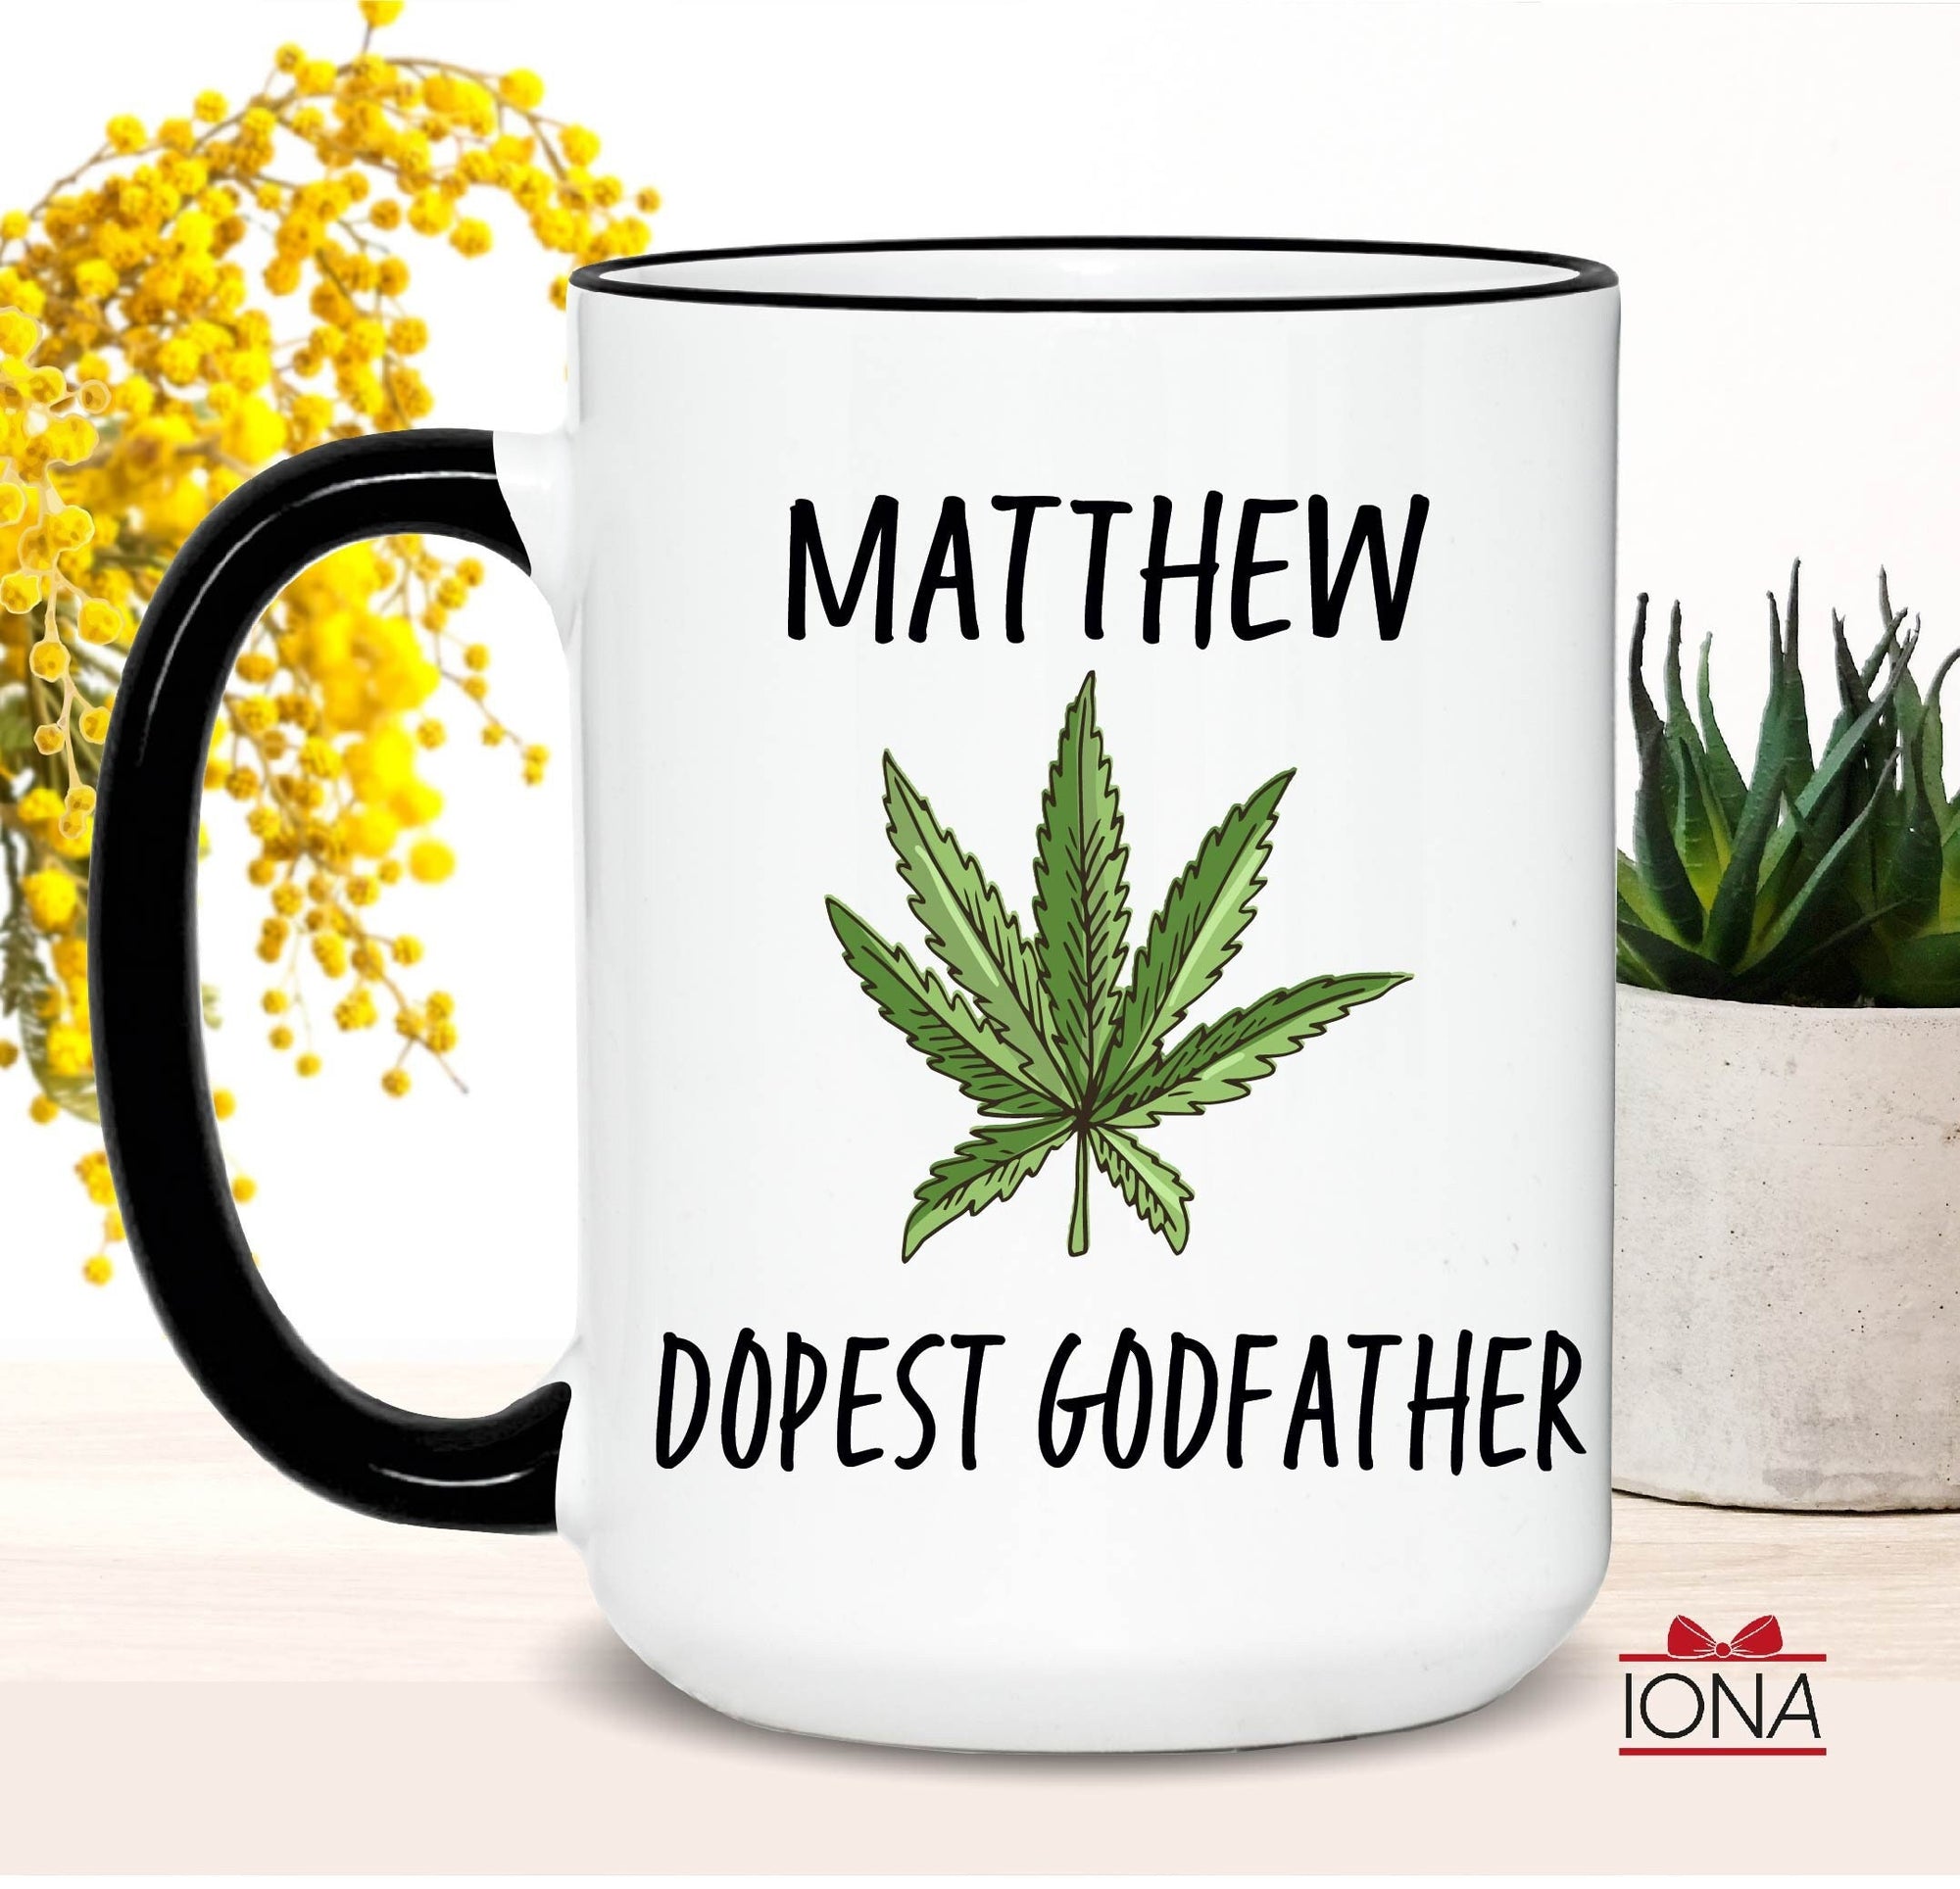 Dopest Godfather Coffee Mug, Personalized Godfather Birthday Gift, Funny Birthday Gift for Godfather, Godfather Mug, Best Fucking Godfather